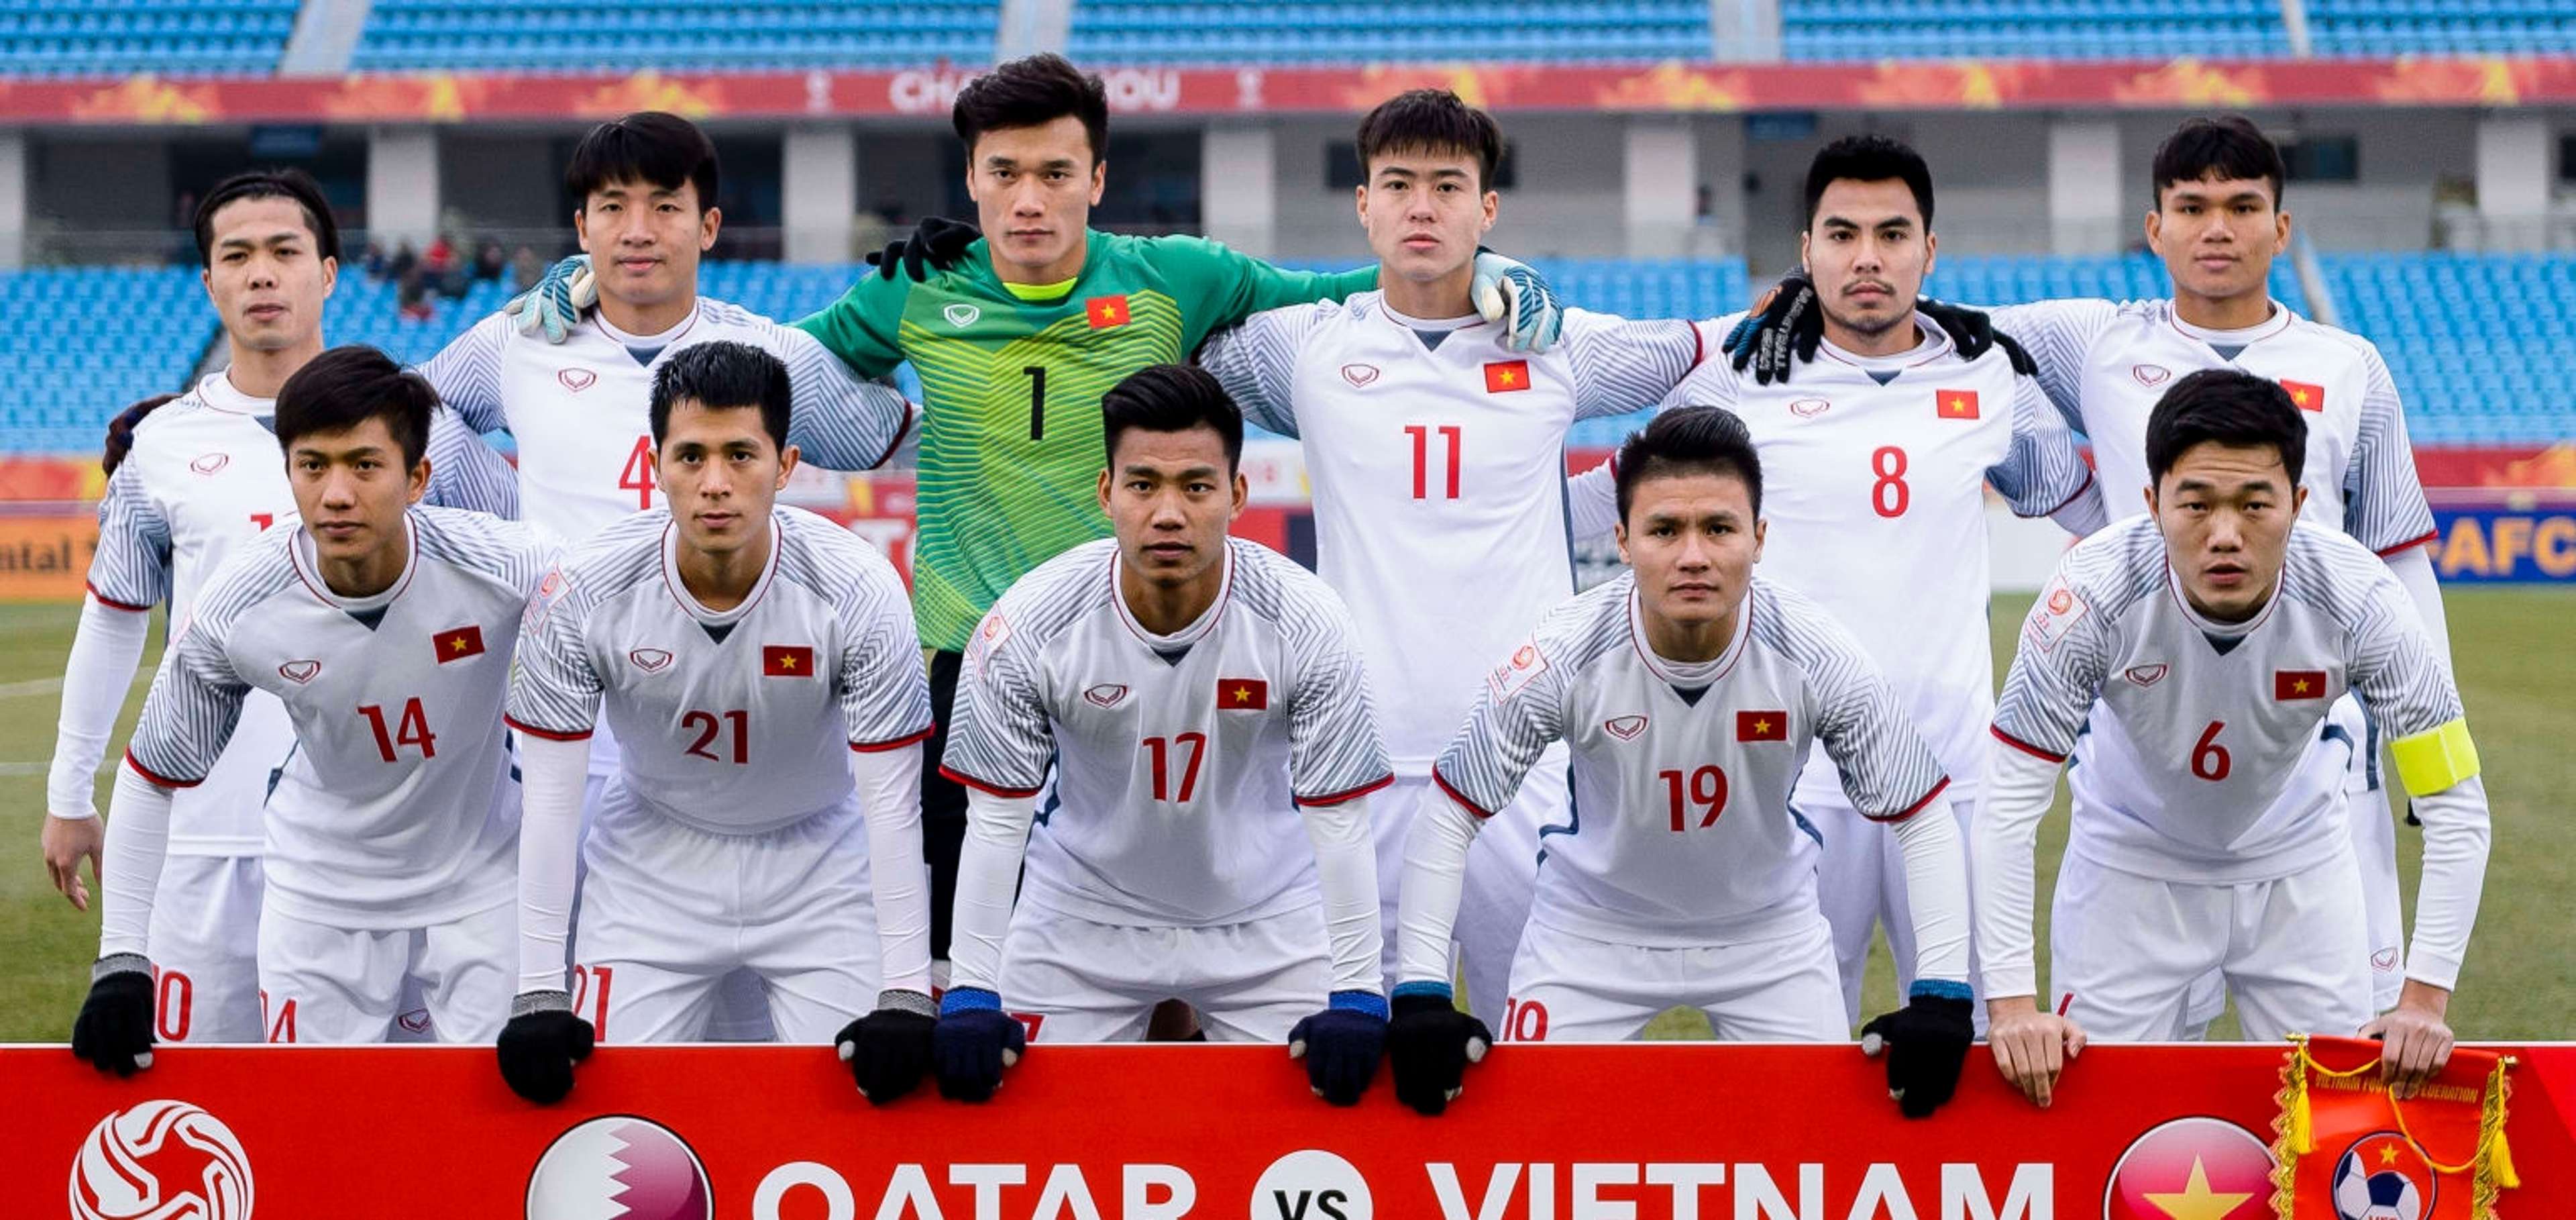 U23 Vietnam